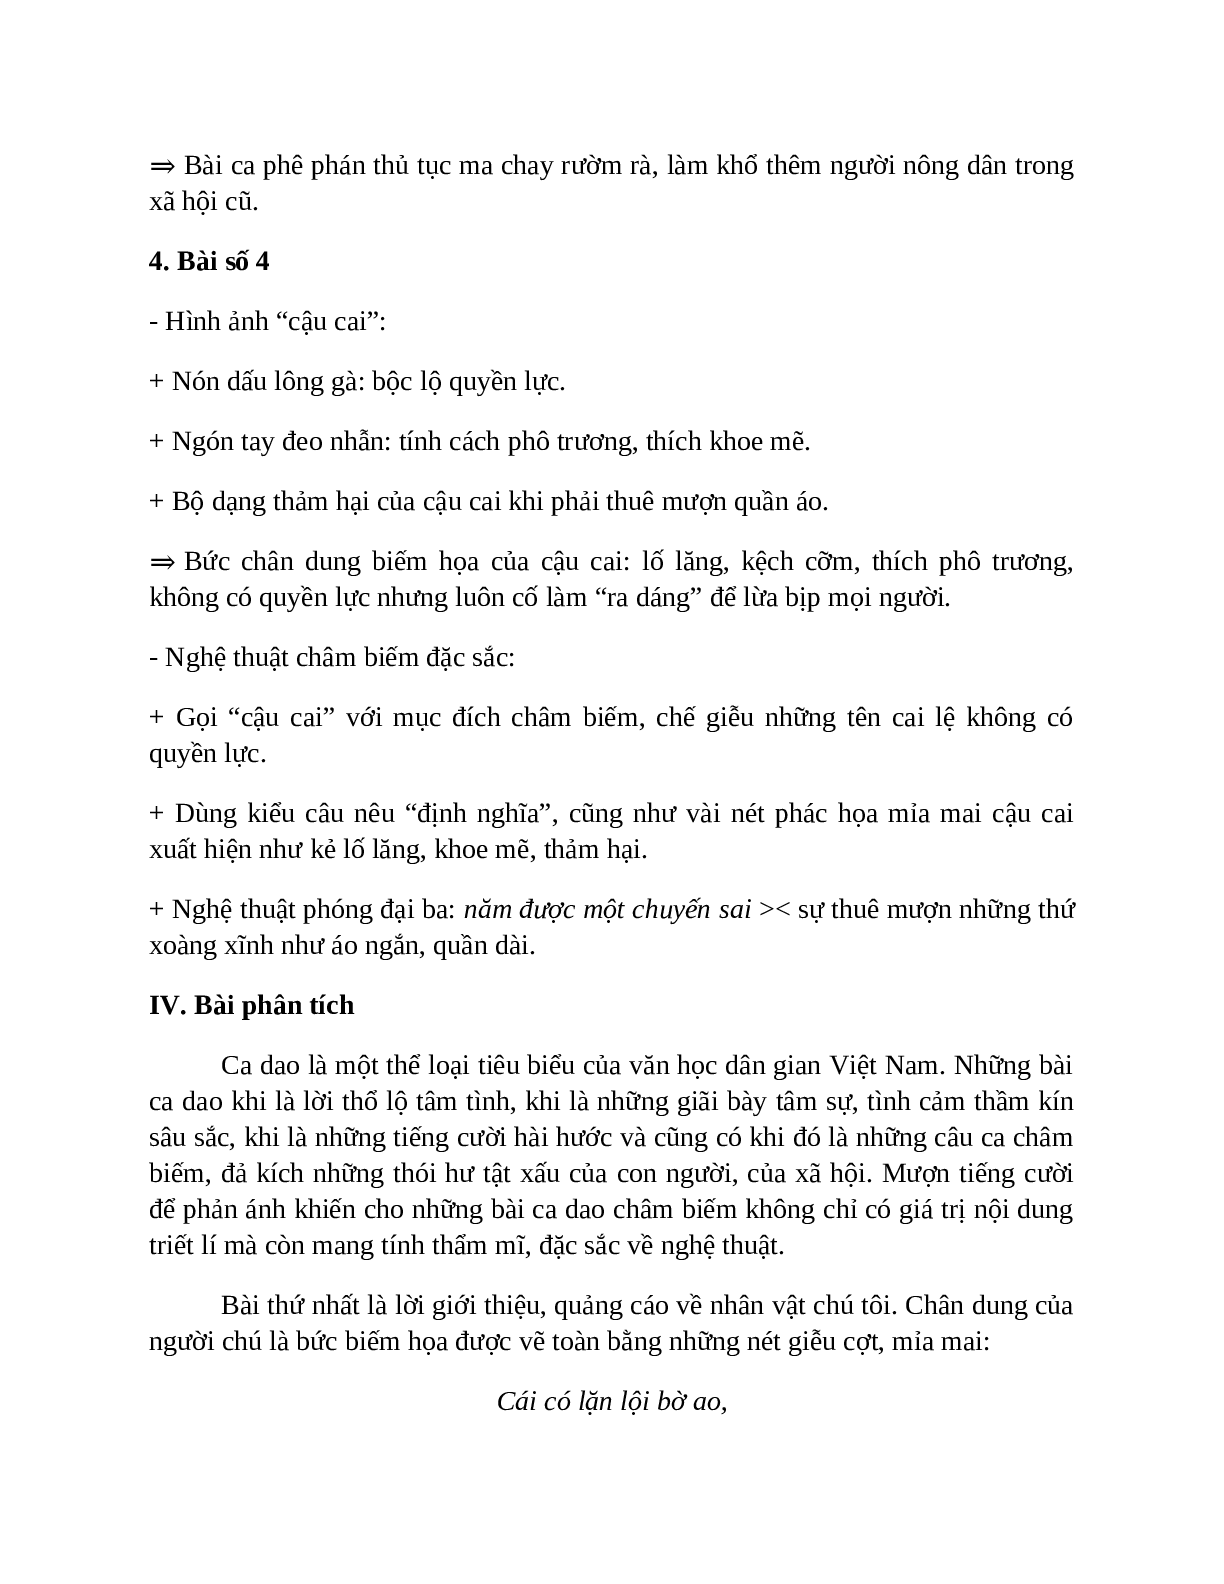 Sơ đồ tư duy bài Những câu hát châm biếm dễ nhớ, ngắn nhất - Ngữ văn lớp 7 (trang 4)